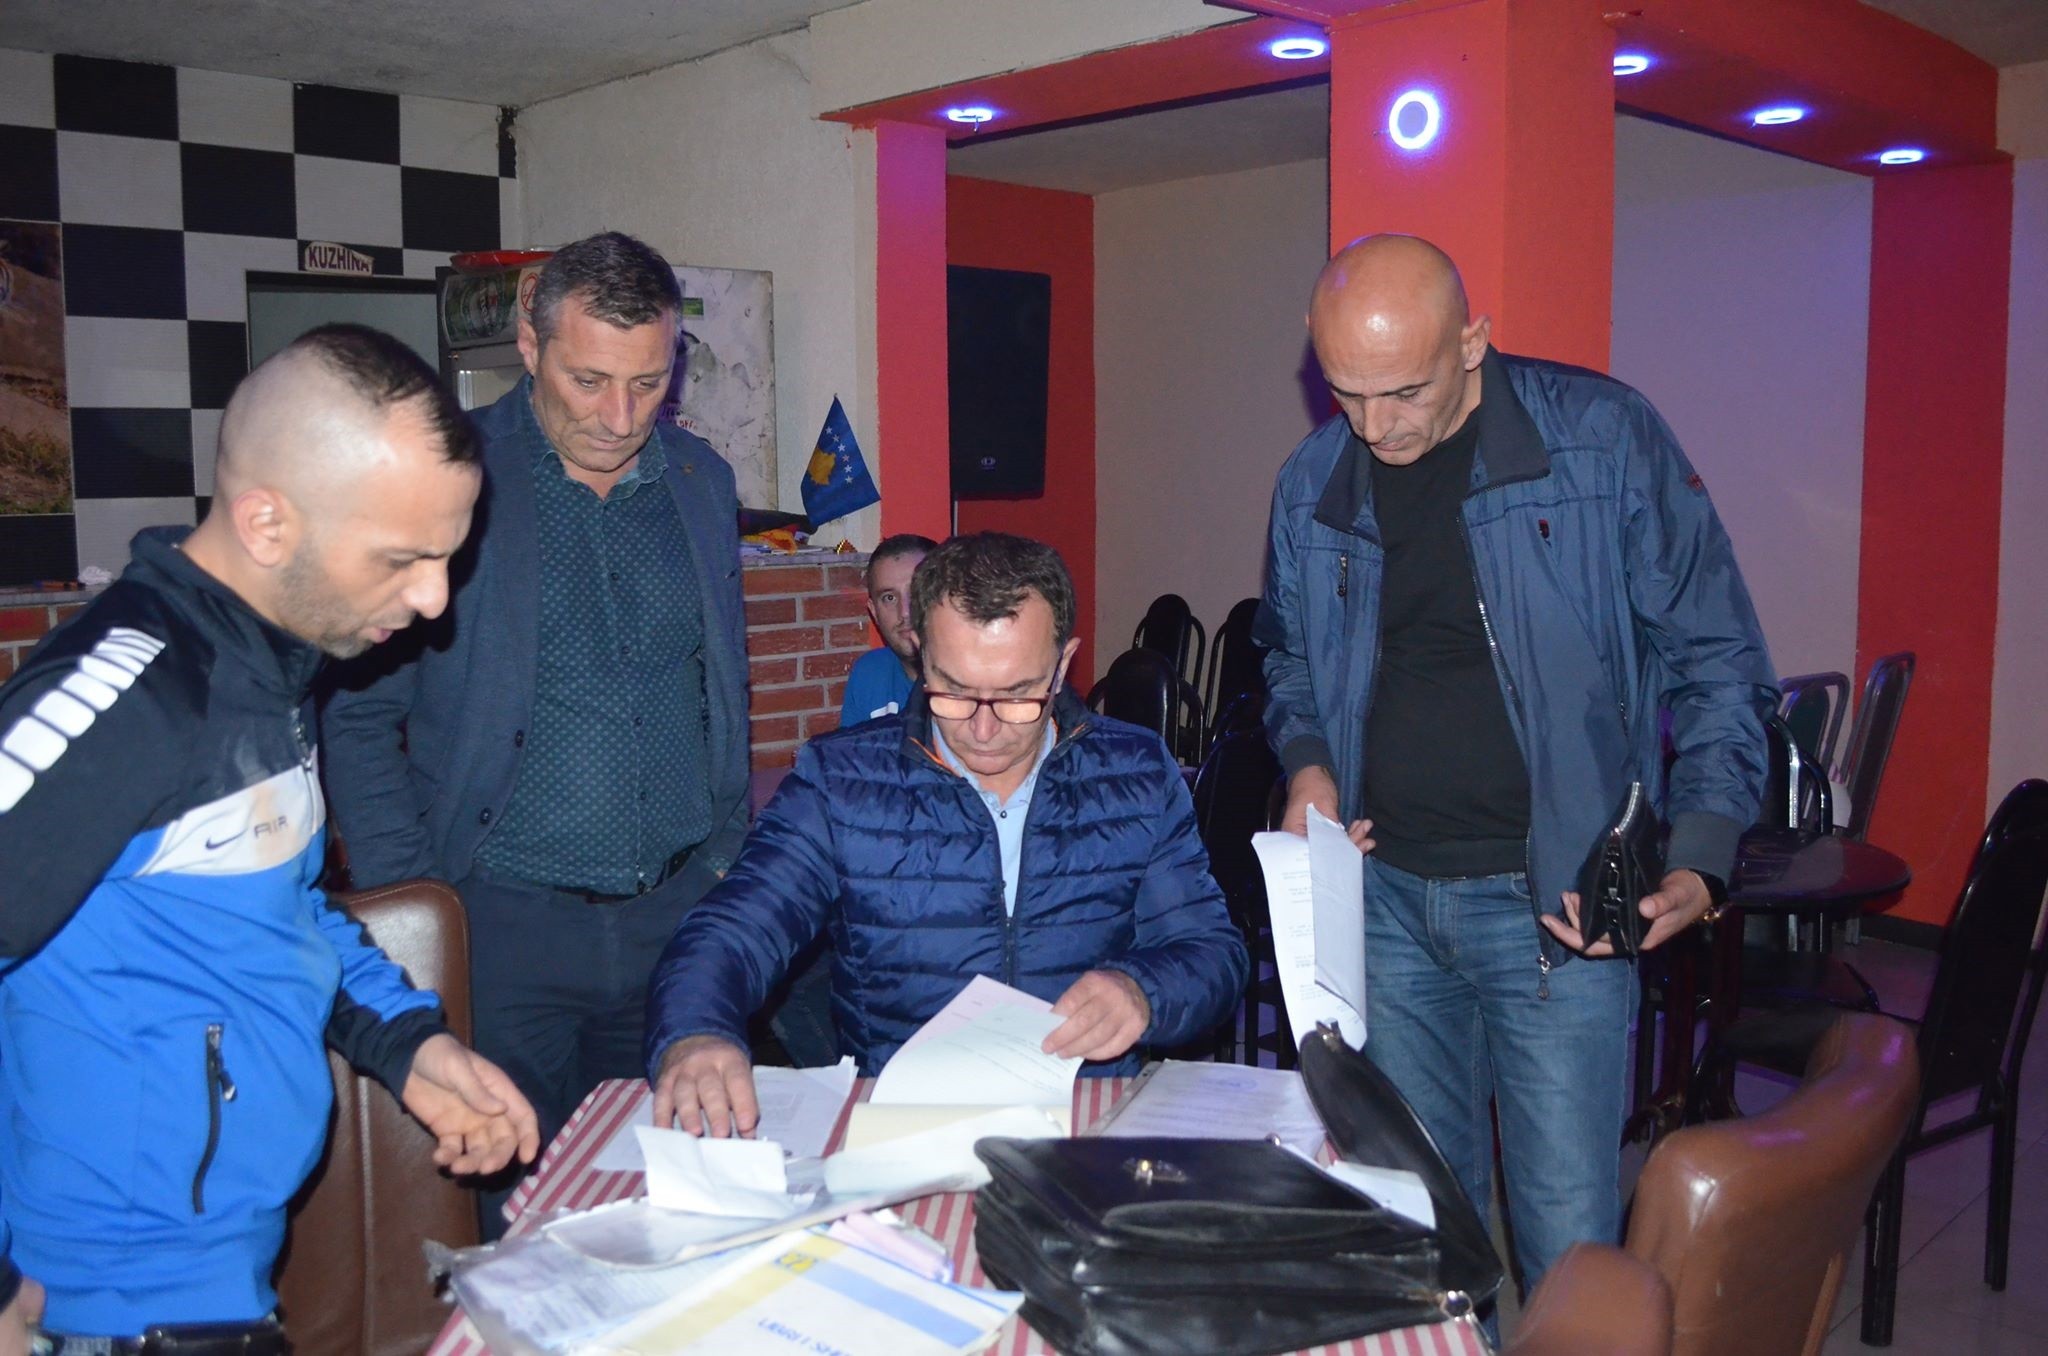 Drejtoria e Inspeksionit kontrollon klubet e natës në Mitrovicë